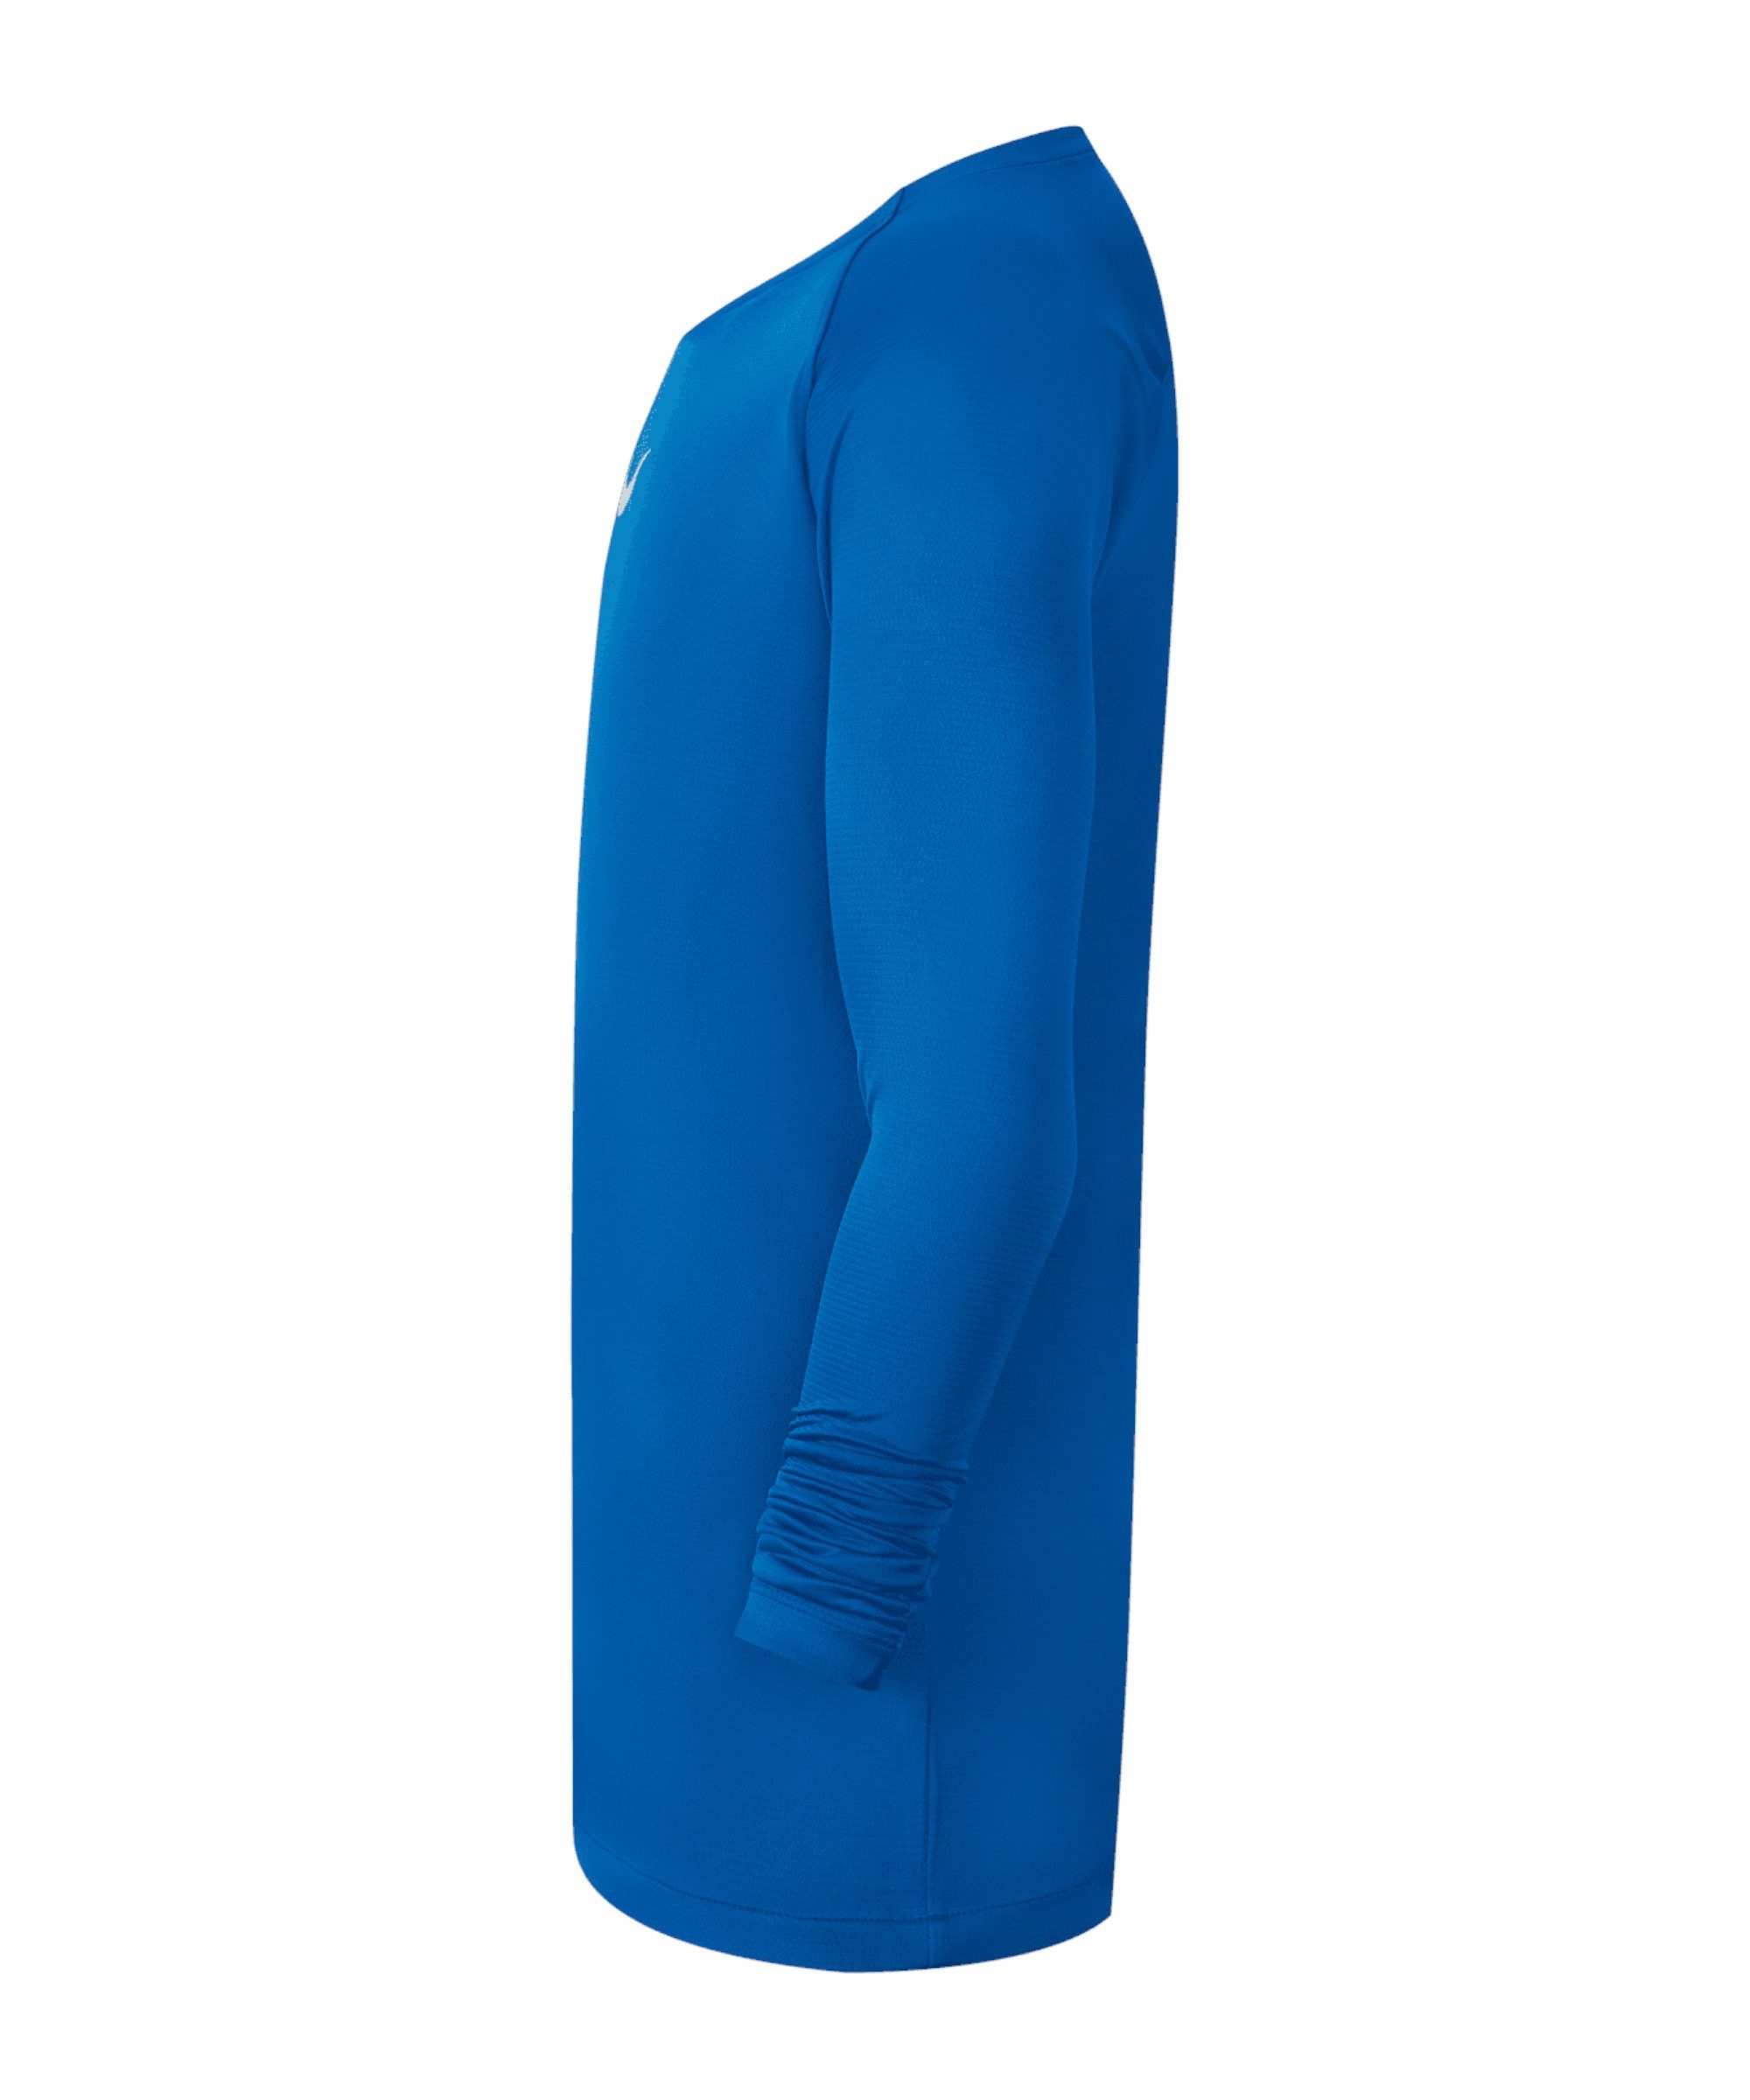 Layer Daumenöffnung Funktionsshirt Top Kids Nike blauweissblau Park First